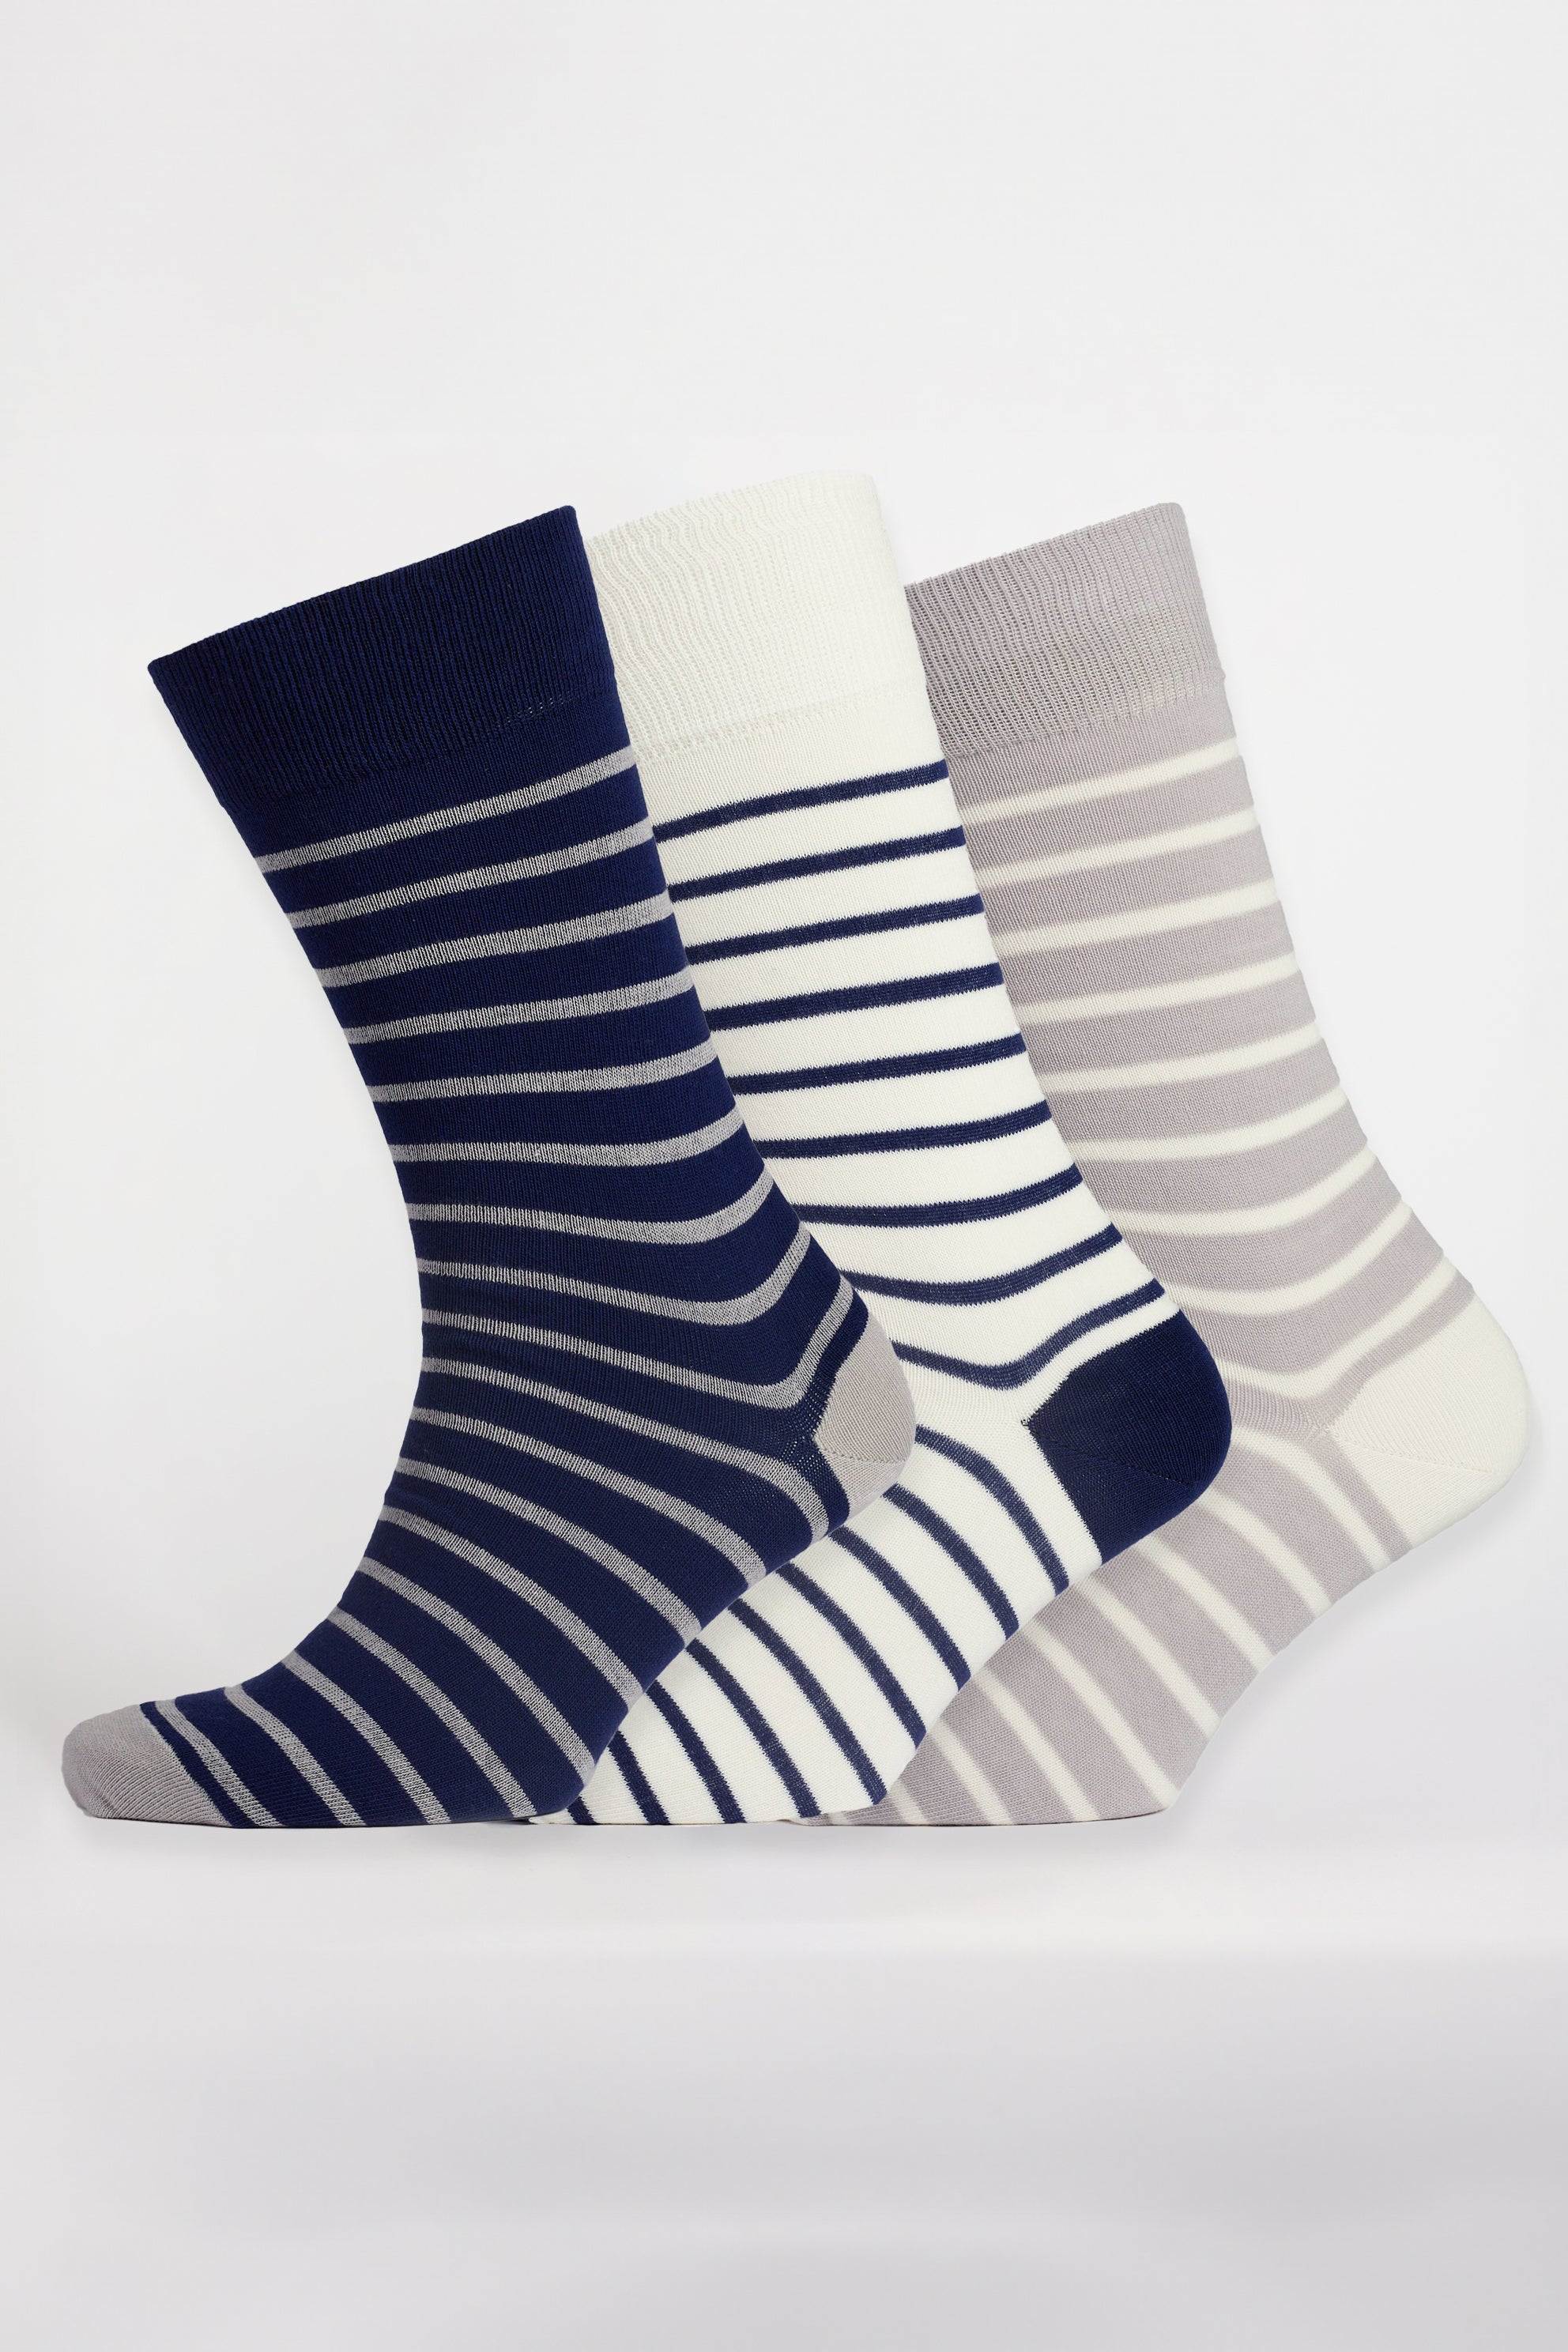 Unisex_Everyday-Cotton-Sock-Breton-Stripe-3-Pack_Navy-Grey-White